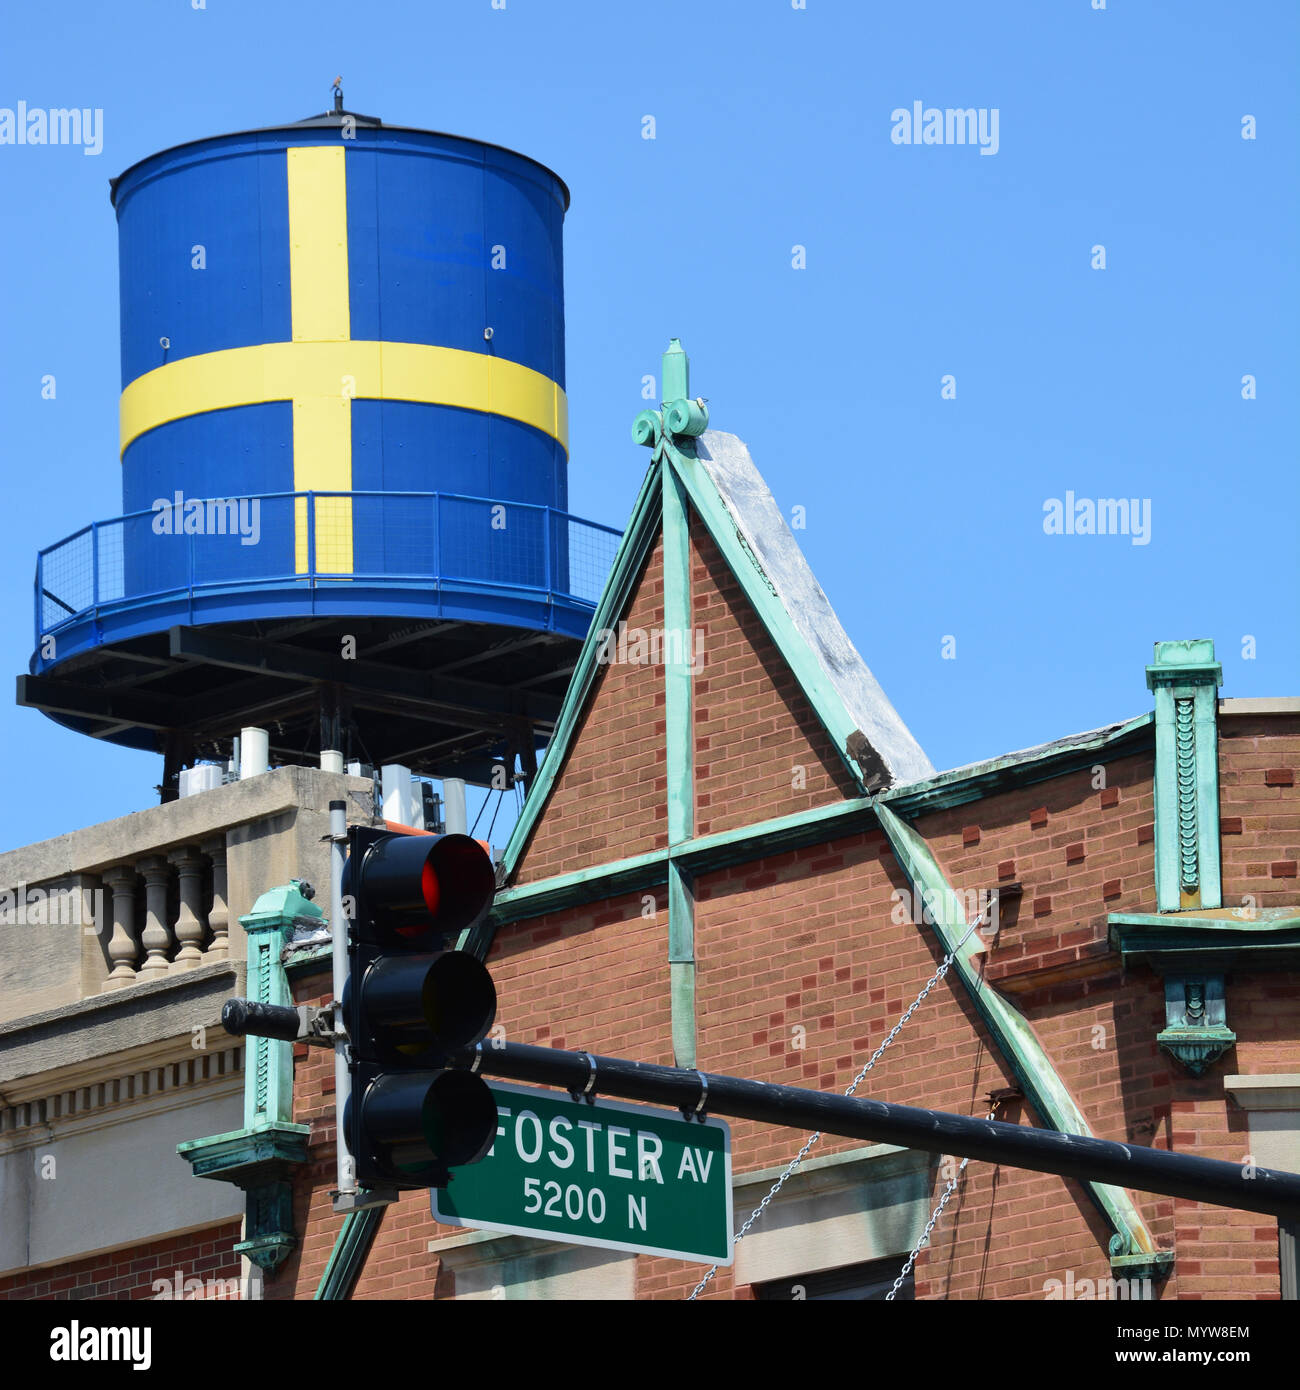 La icónica torre de agua con bandera sueca siempre ha sido un hito y símbolo de las raíces culturales en el Chicago's Andersonville barrio Foto de stock